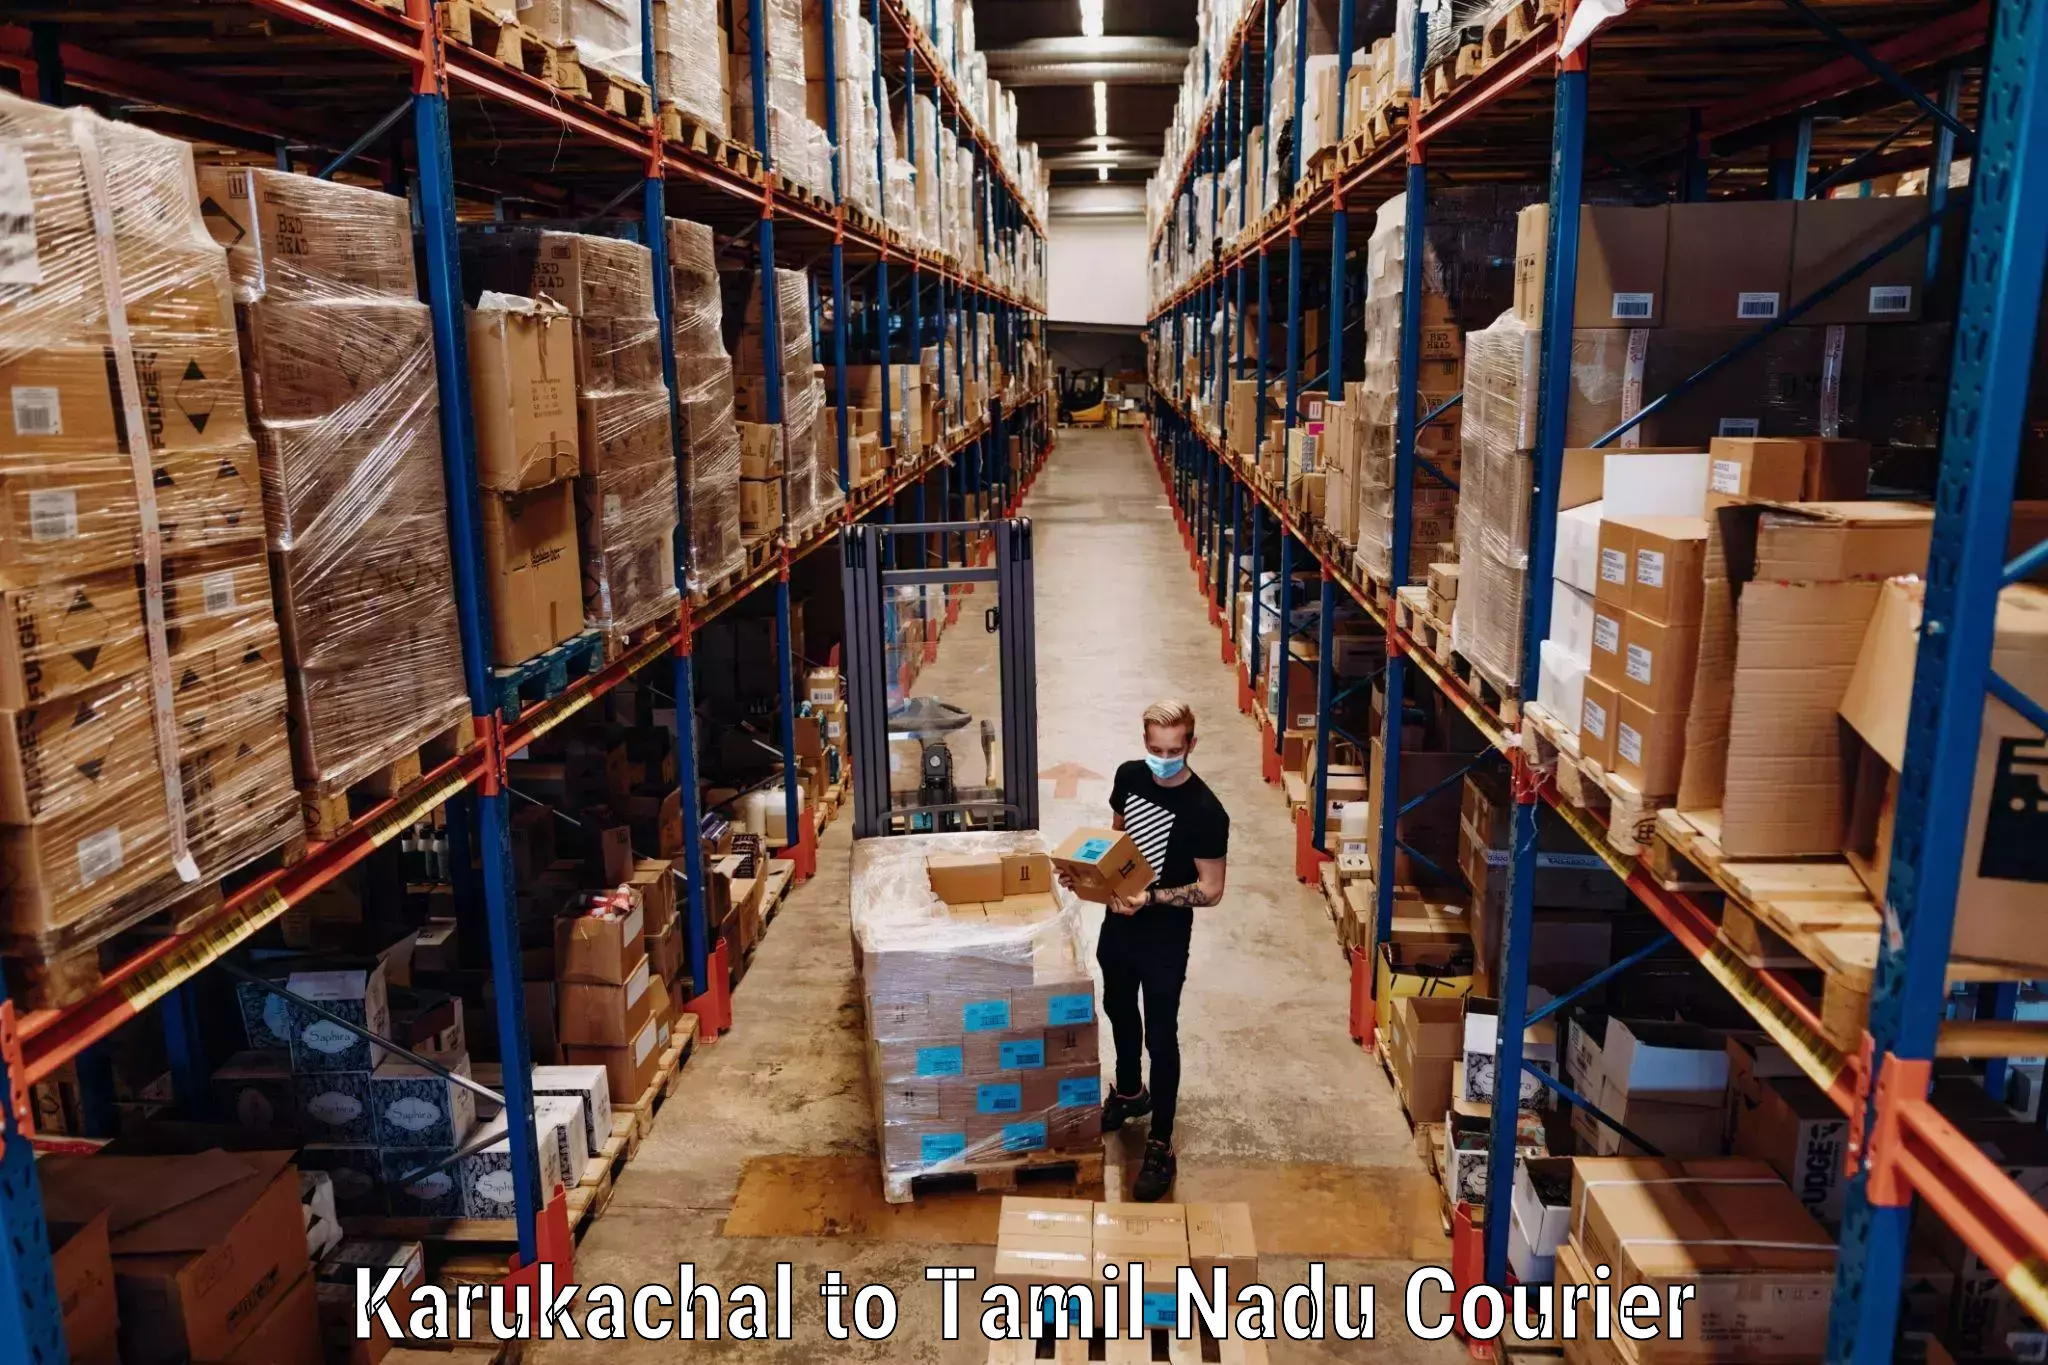 Luggage shipping planner Karukachal to Katpadi